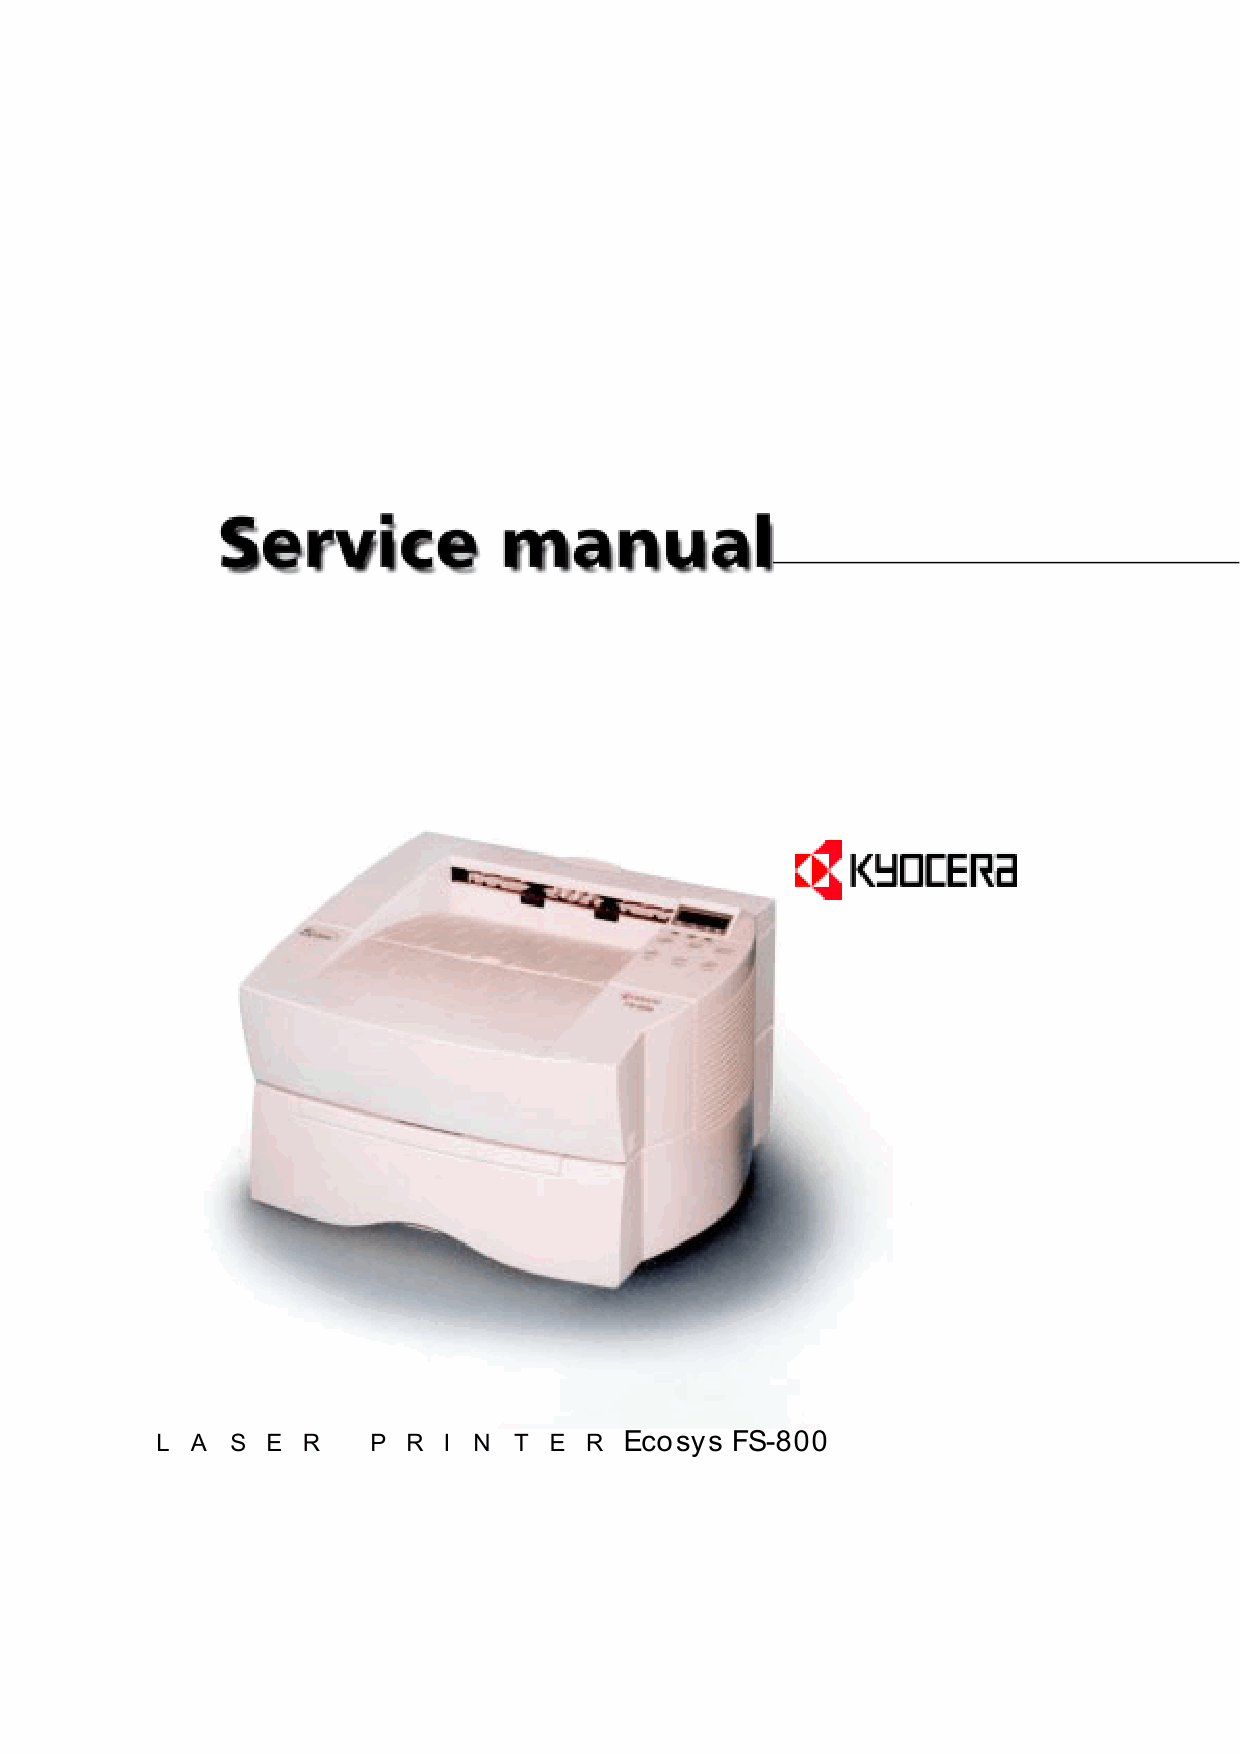 KYOCERA LaserPrinter FS-800 Parts and Service Manual-1